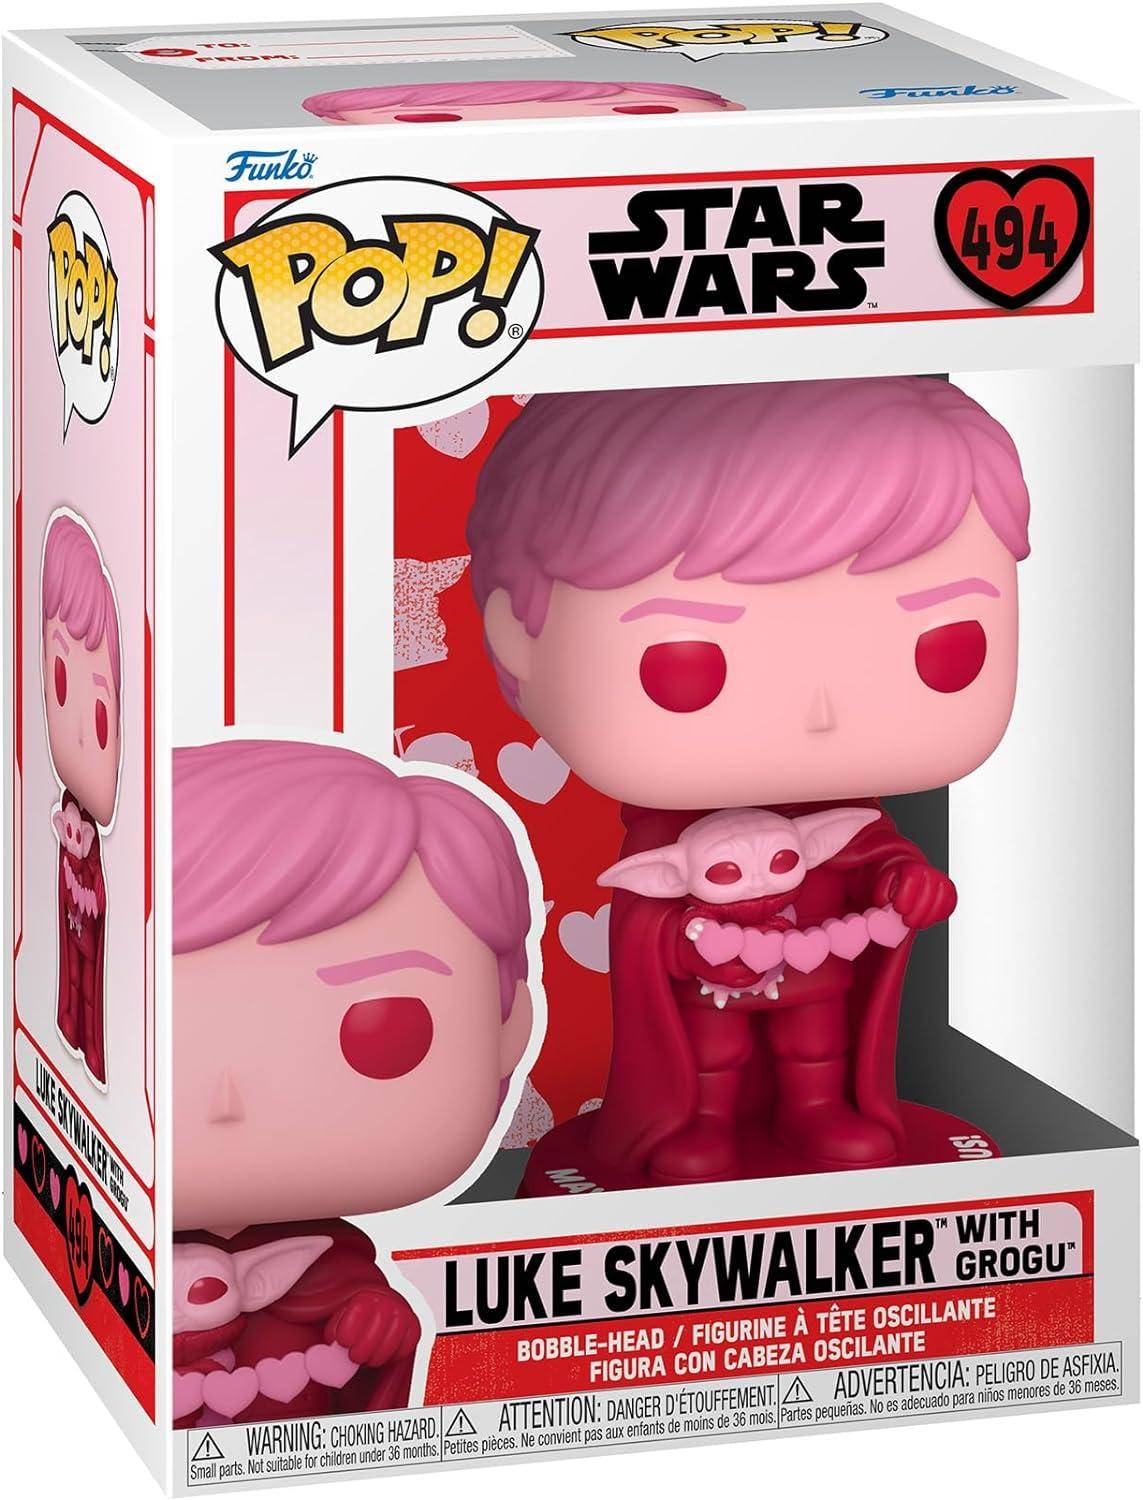 Star Wars - POP! Valentines Luke Skywalker mit Grogu - 494